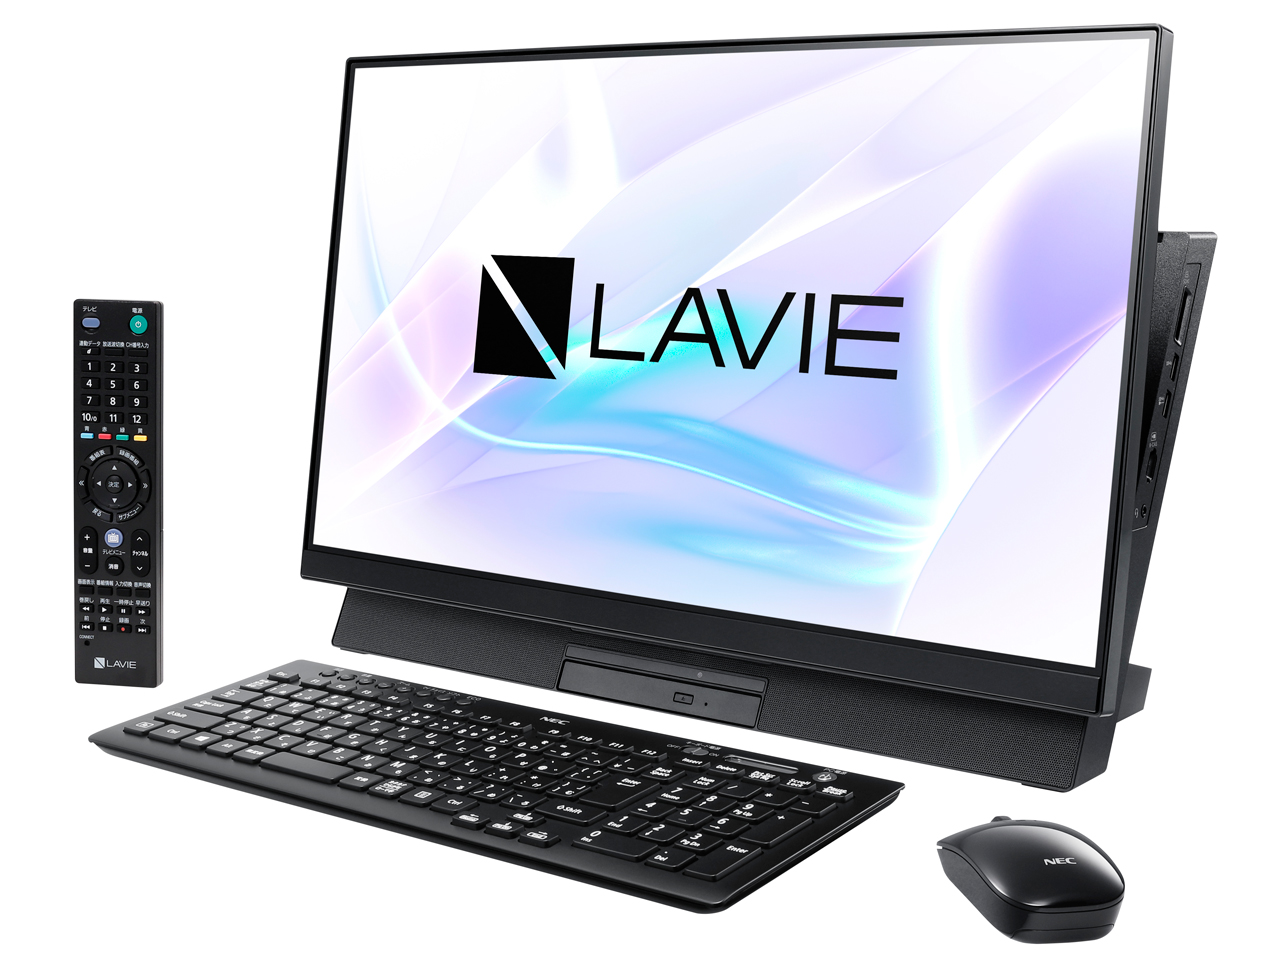 価格.com - LAVIE Desk All-in-one DA770/MAB PC-DA770MAB の製品画像